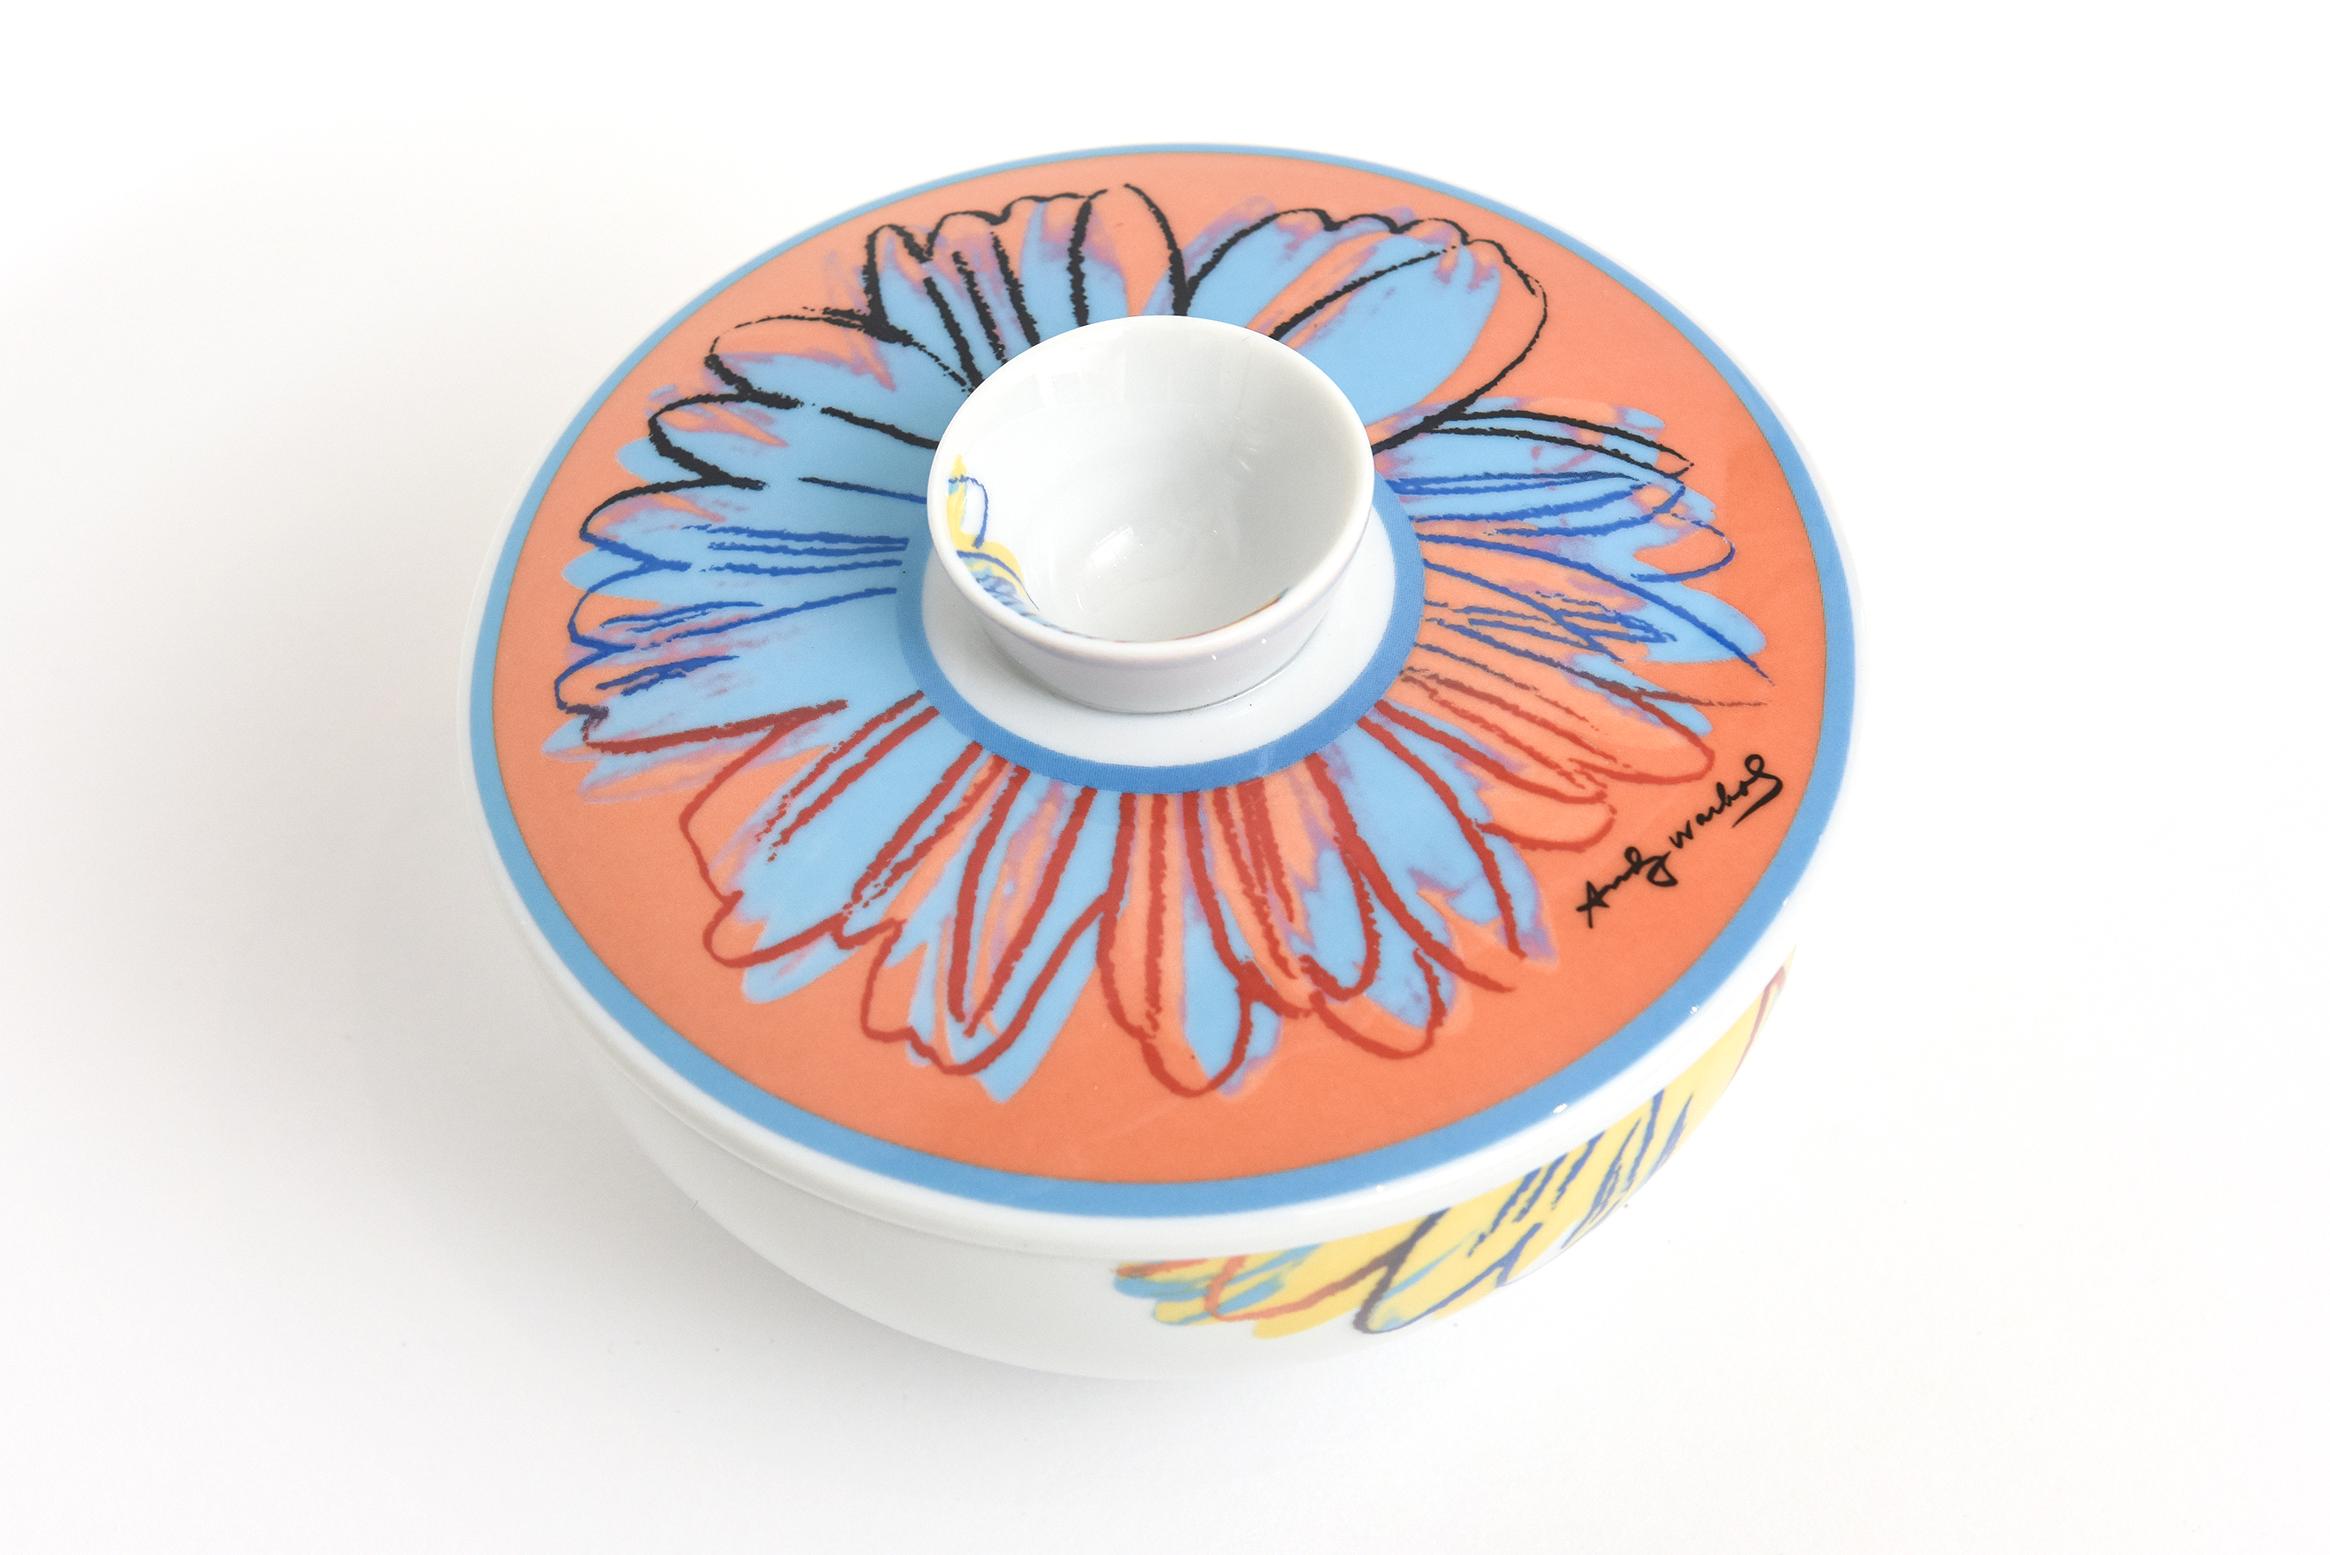 Diese immer wieder wunderbare Rosenthal Studio Line Zuckerdose aus Porzellan mit Deckel ist nach einem Entwurf von Andy Warhol. Signiert Andy Warhol. Die Farben sind fröhlich in Orange-, Blau-, Gelb- und Rottönen auf dem weißen Porzellan. Aus den